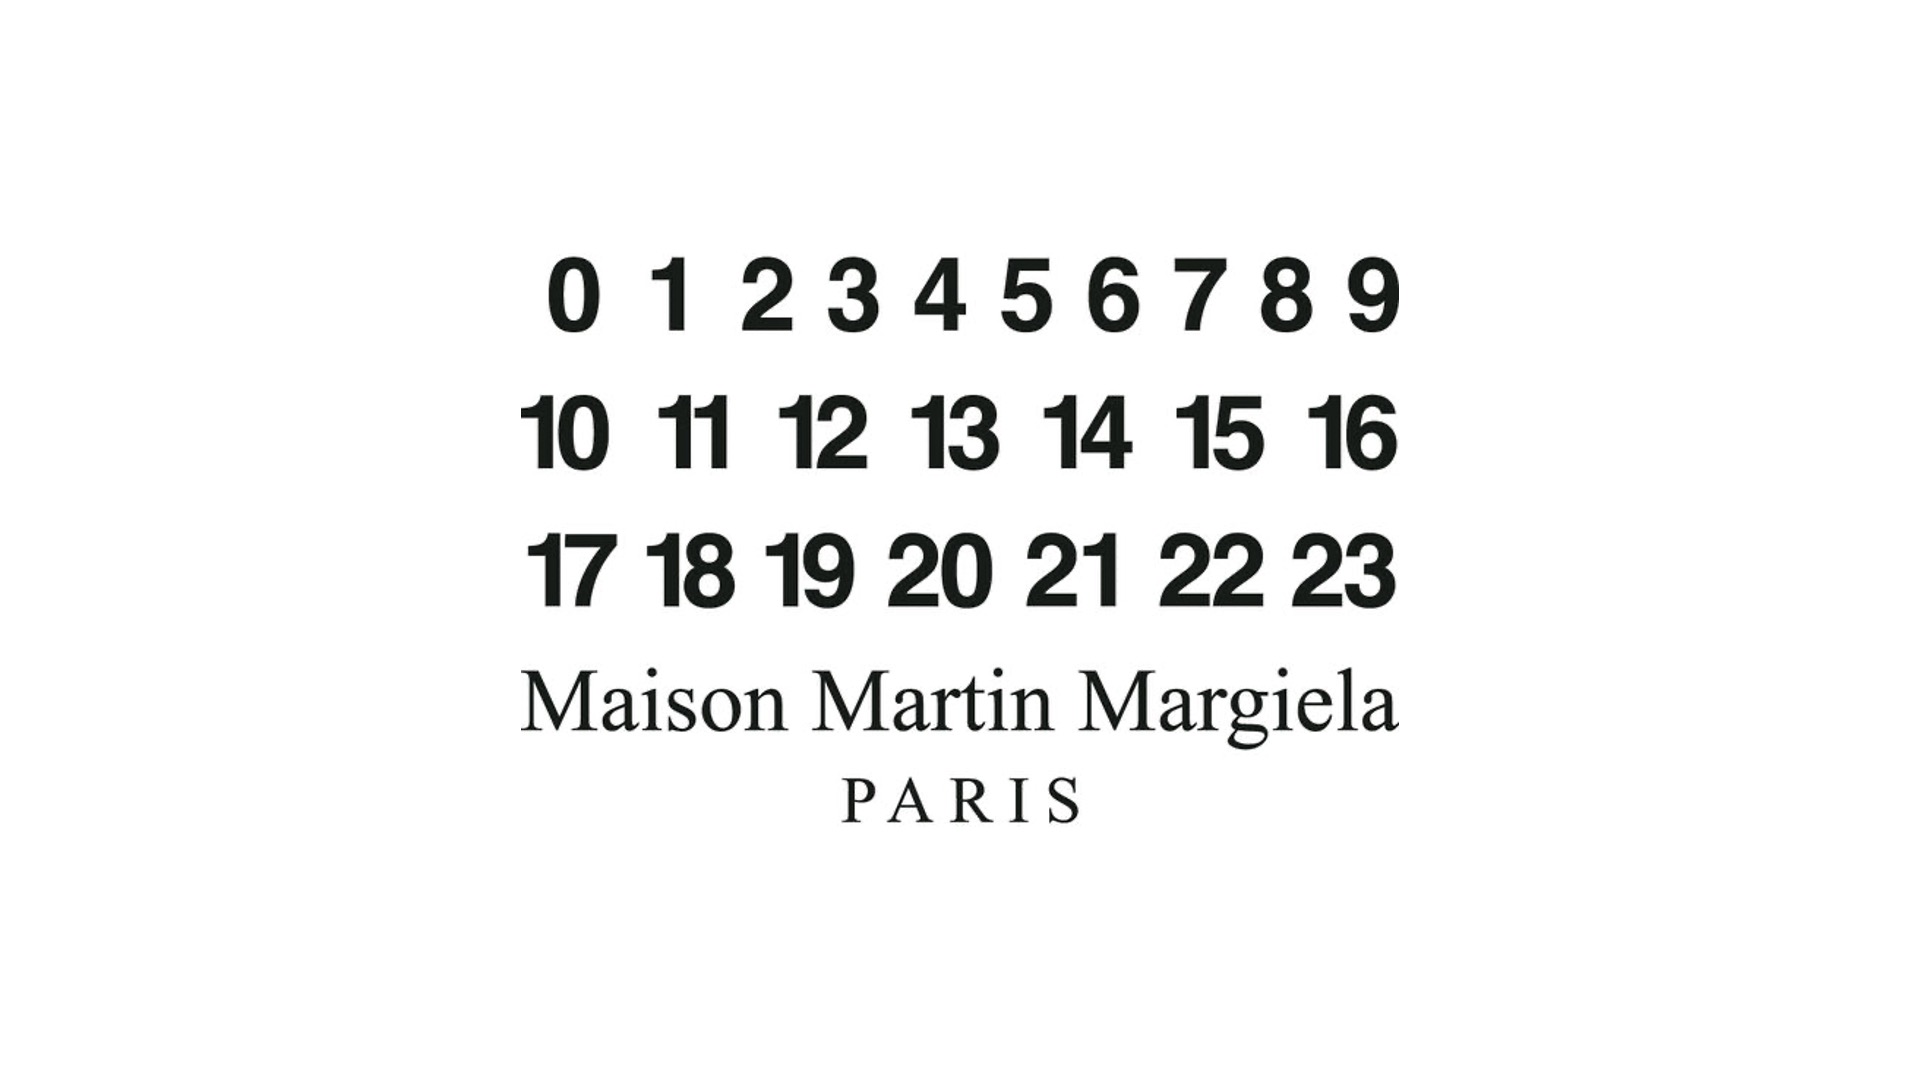 Maison Margiela: Das avantgardistische Modehaus mit globaler Präsenz